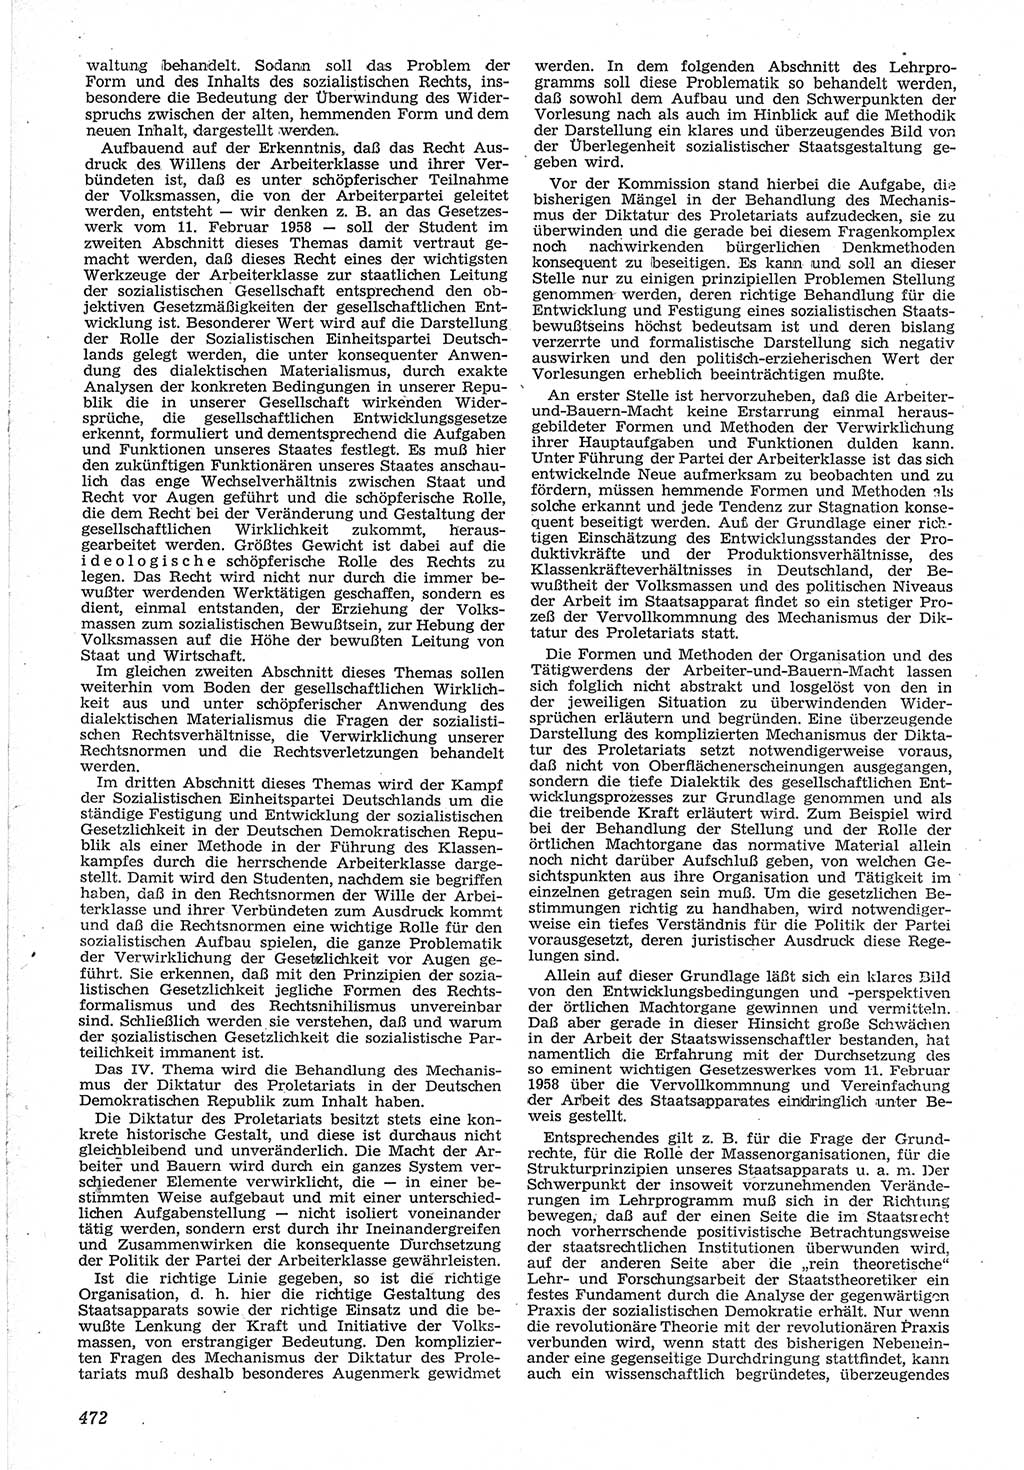 Neue Justiz (NJ), Zeitschrift für Recht und Rechtswissenschaft [Deutsche Demokratische Republik (DDR)], 12. Jahrgang 1958, Seite 472 (NJ DDR 1958, S. 472)